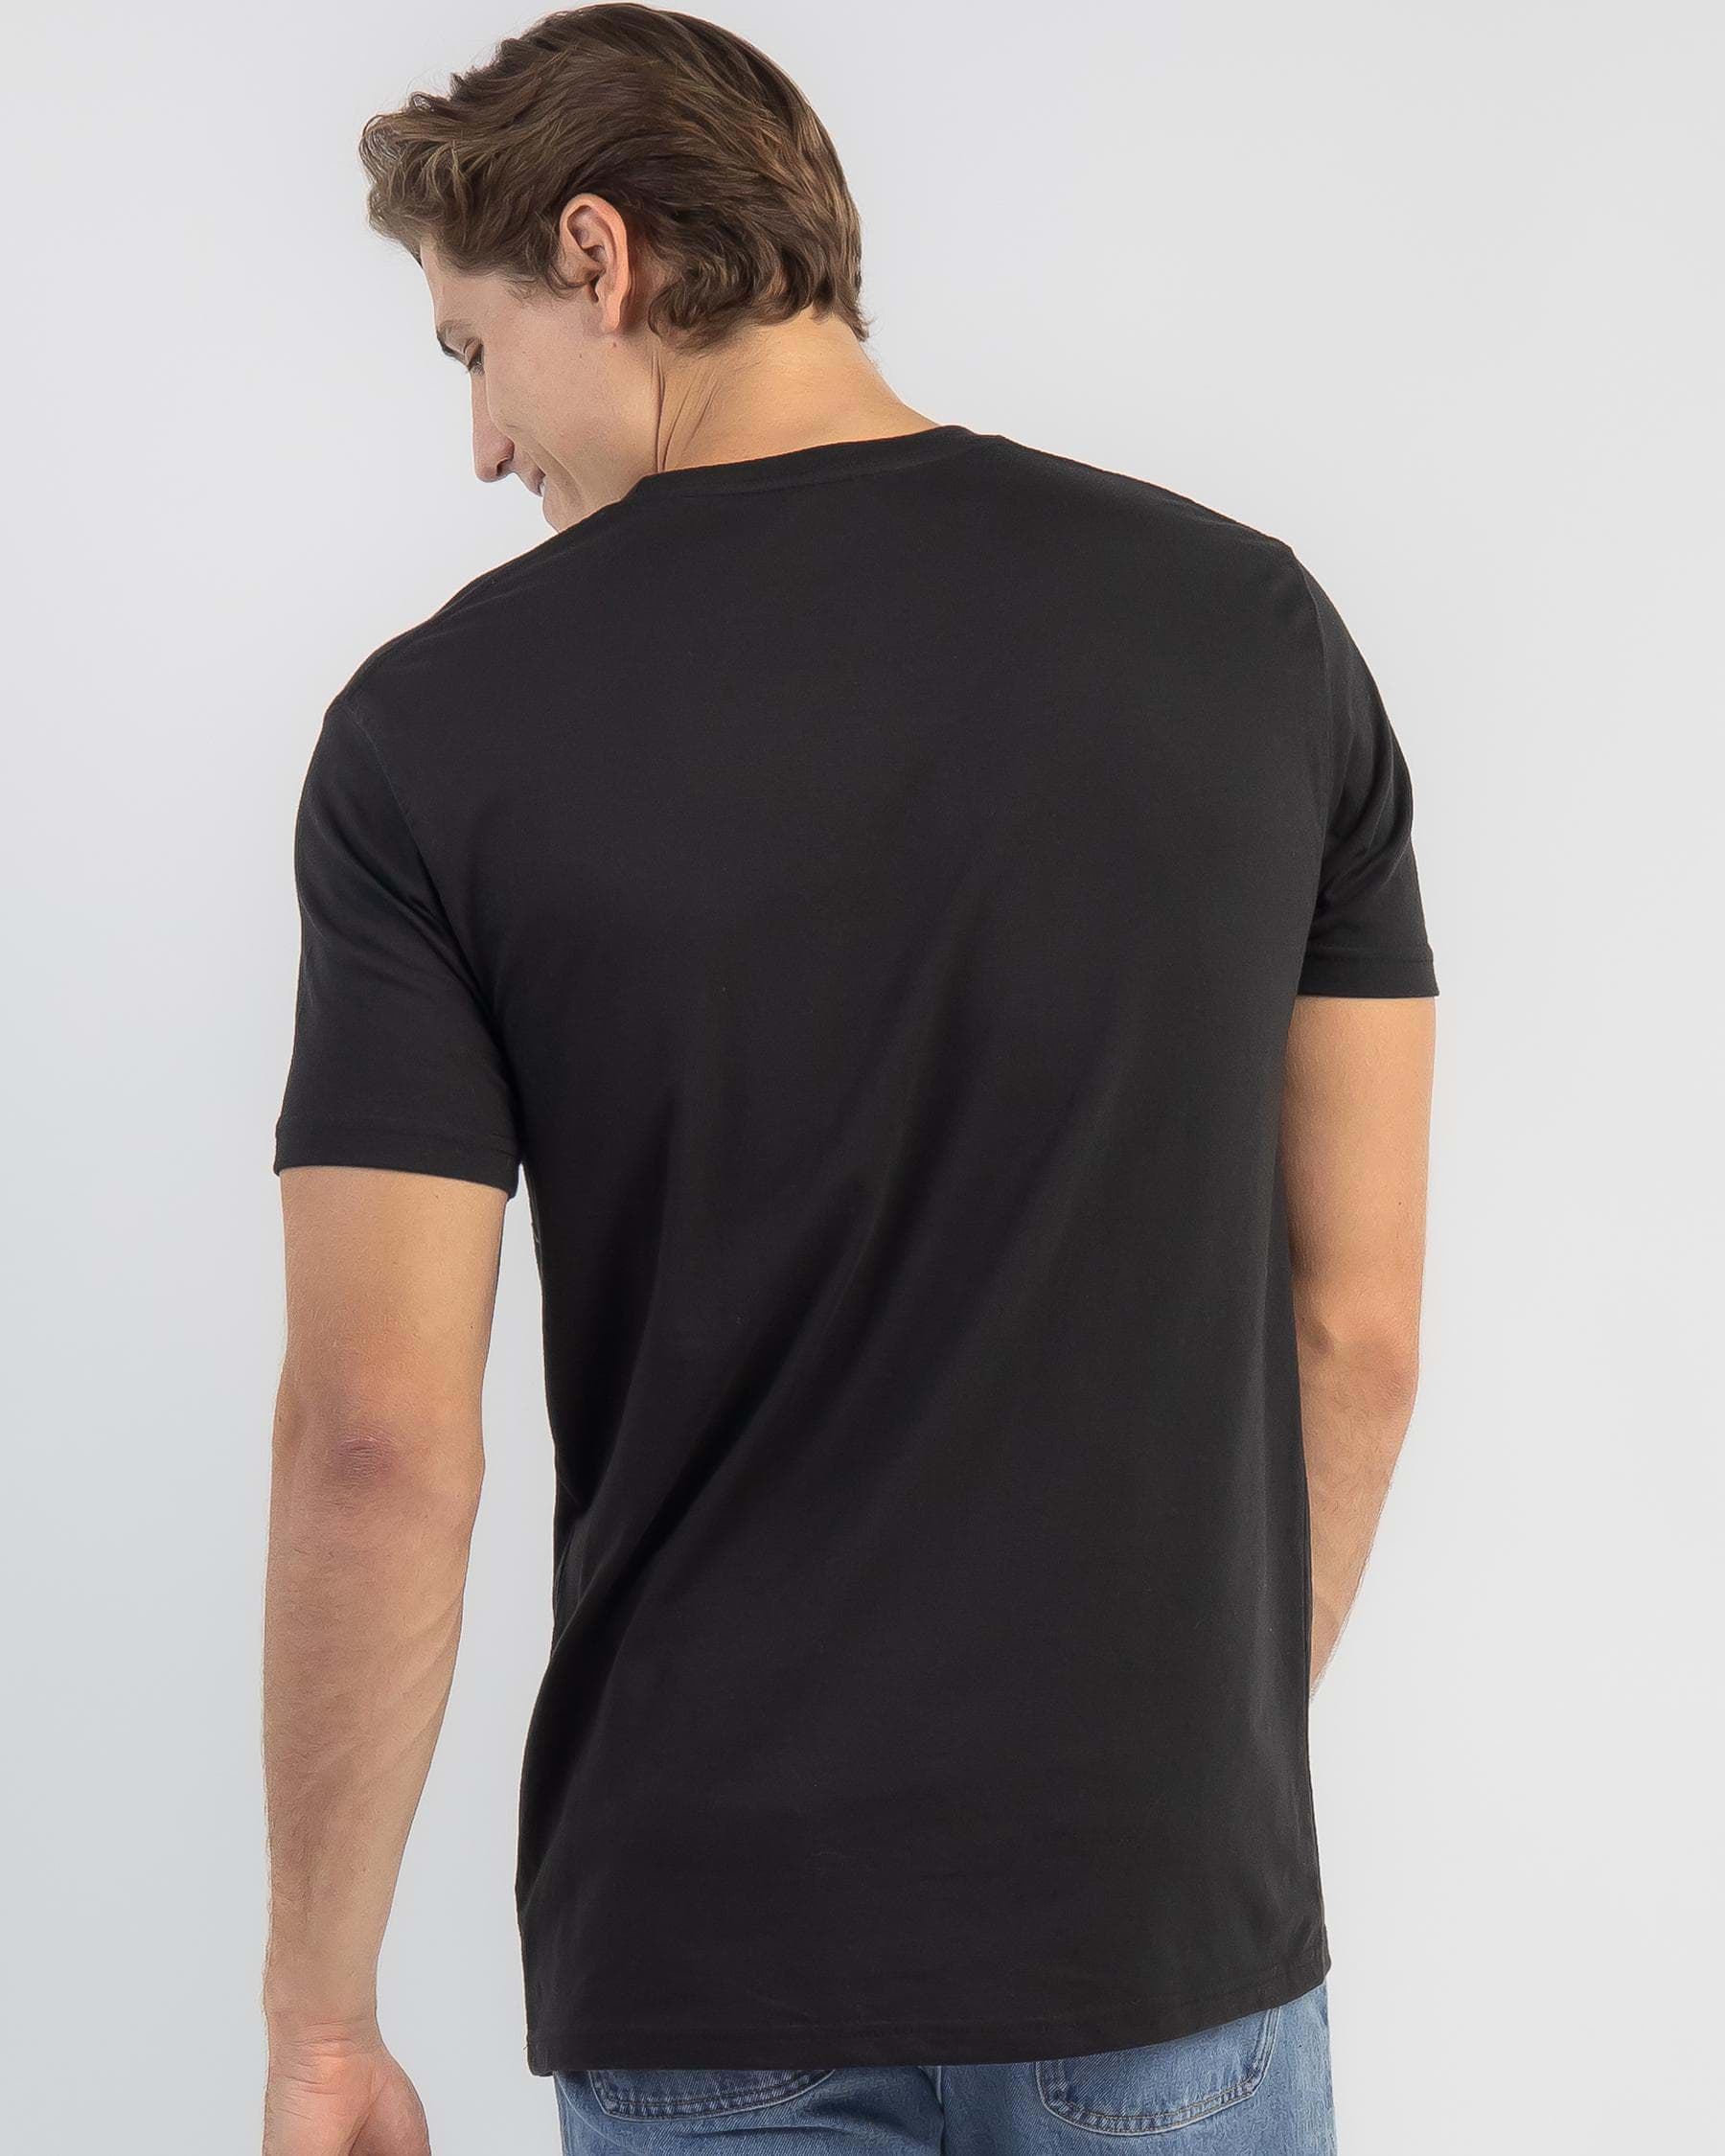 John Deere Logo T-Shirt In Black - FREE* Shipping & Easy Returns - City ...